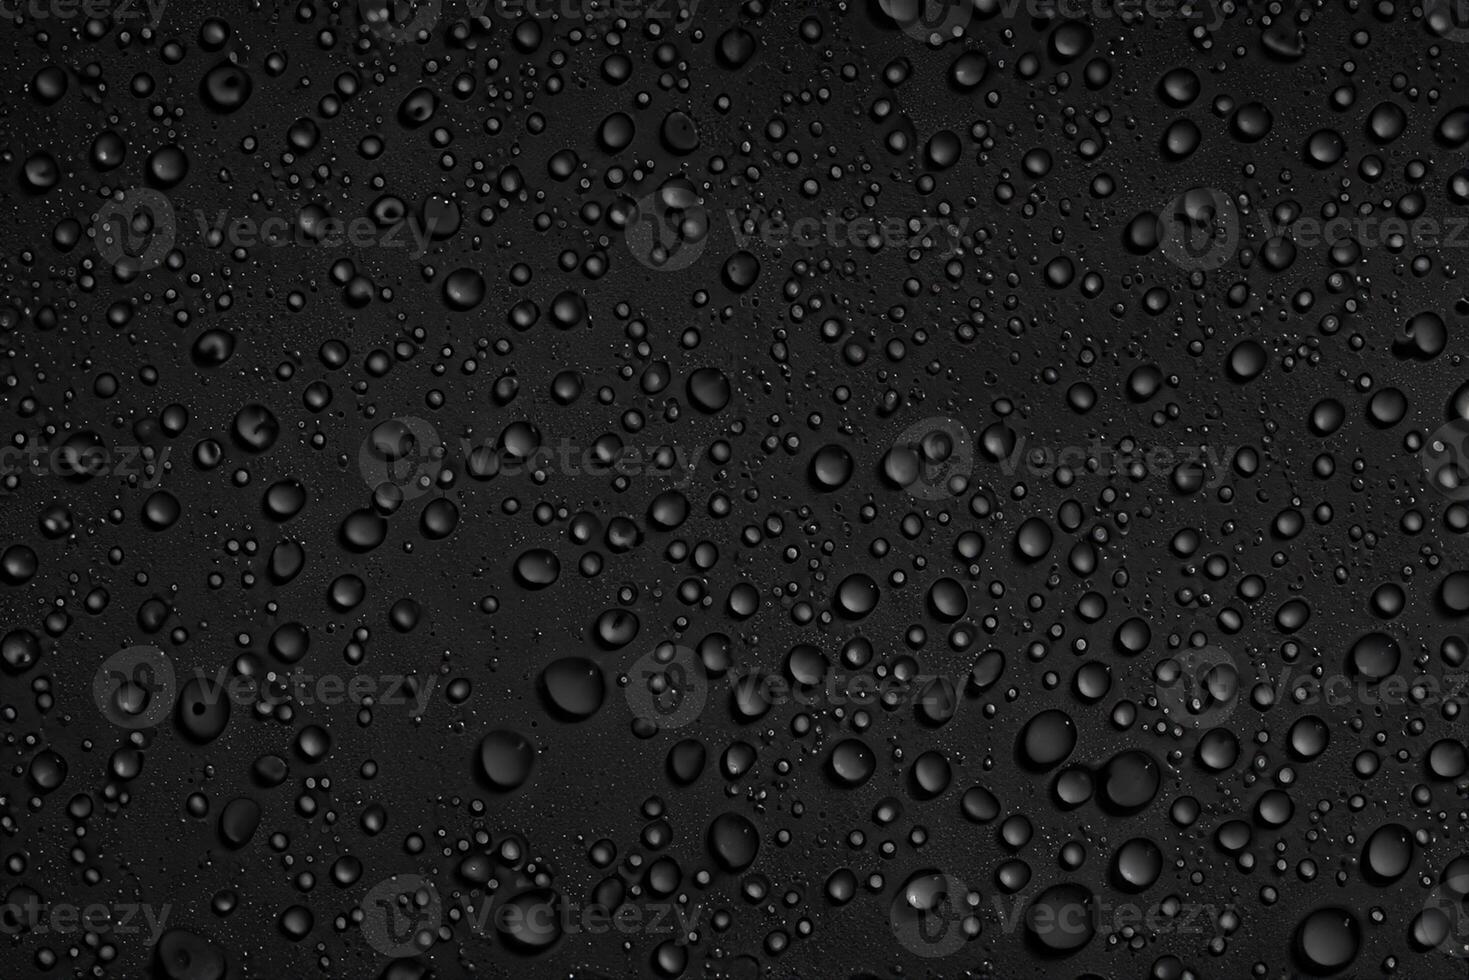 gotas de agua sobre fondo negro foto